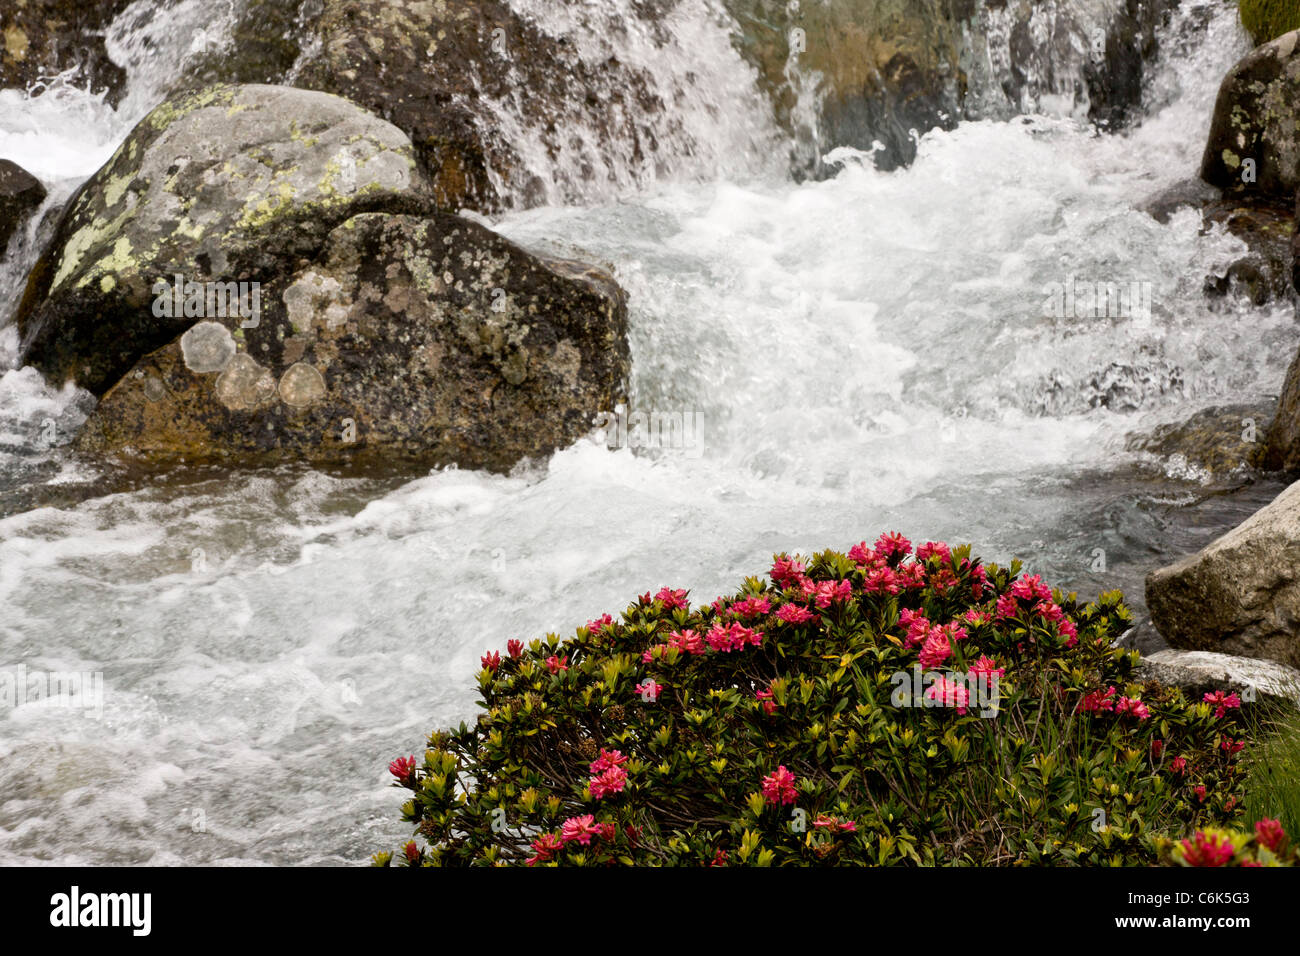 Alpenrose, Rhododendron ferrugineum in flower by an alpine stream, Engadin valley, Switzerland Stock Photo